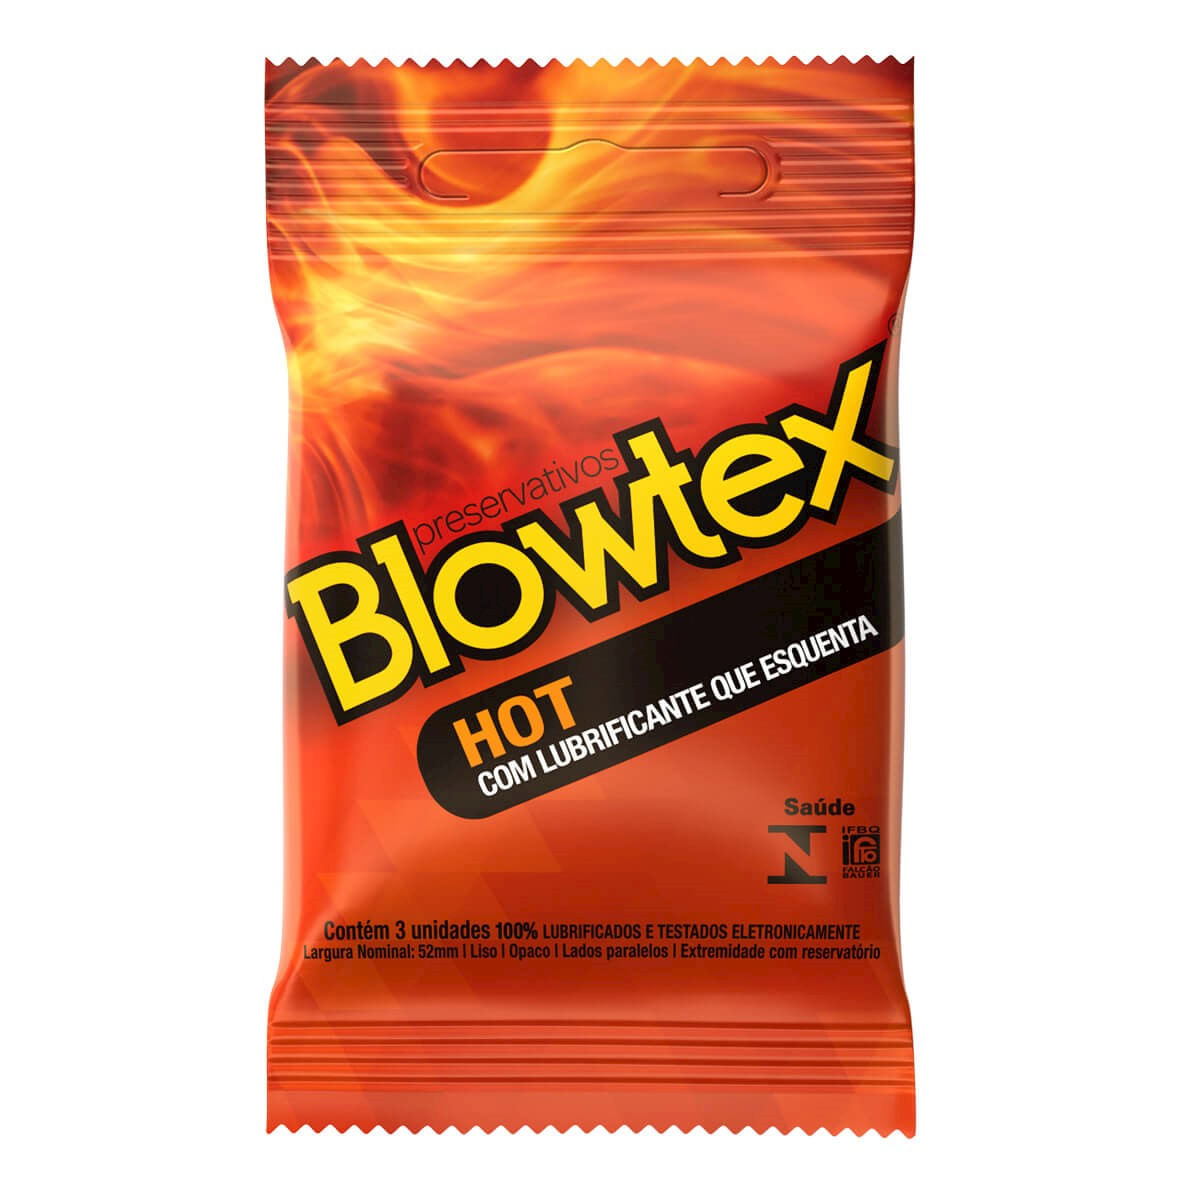 Preservativo Hot com Lubrificante que Esquenta com 3 unidades Blowtex